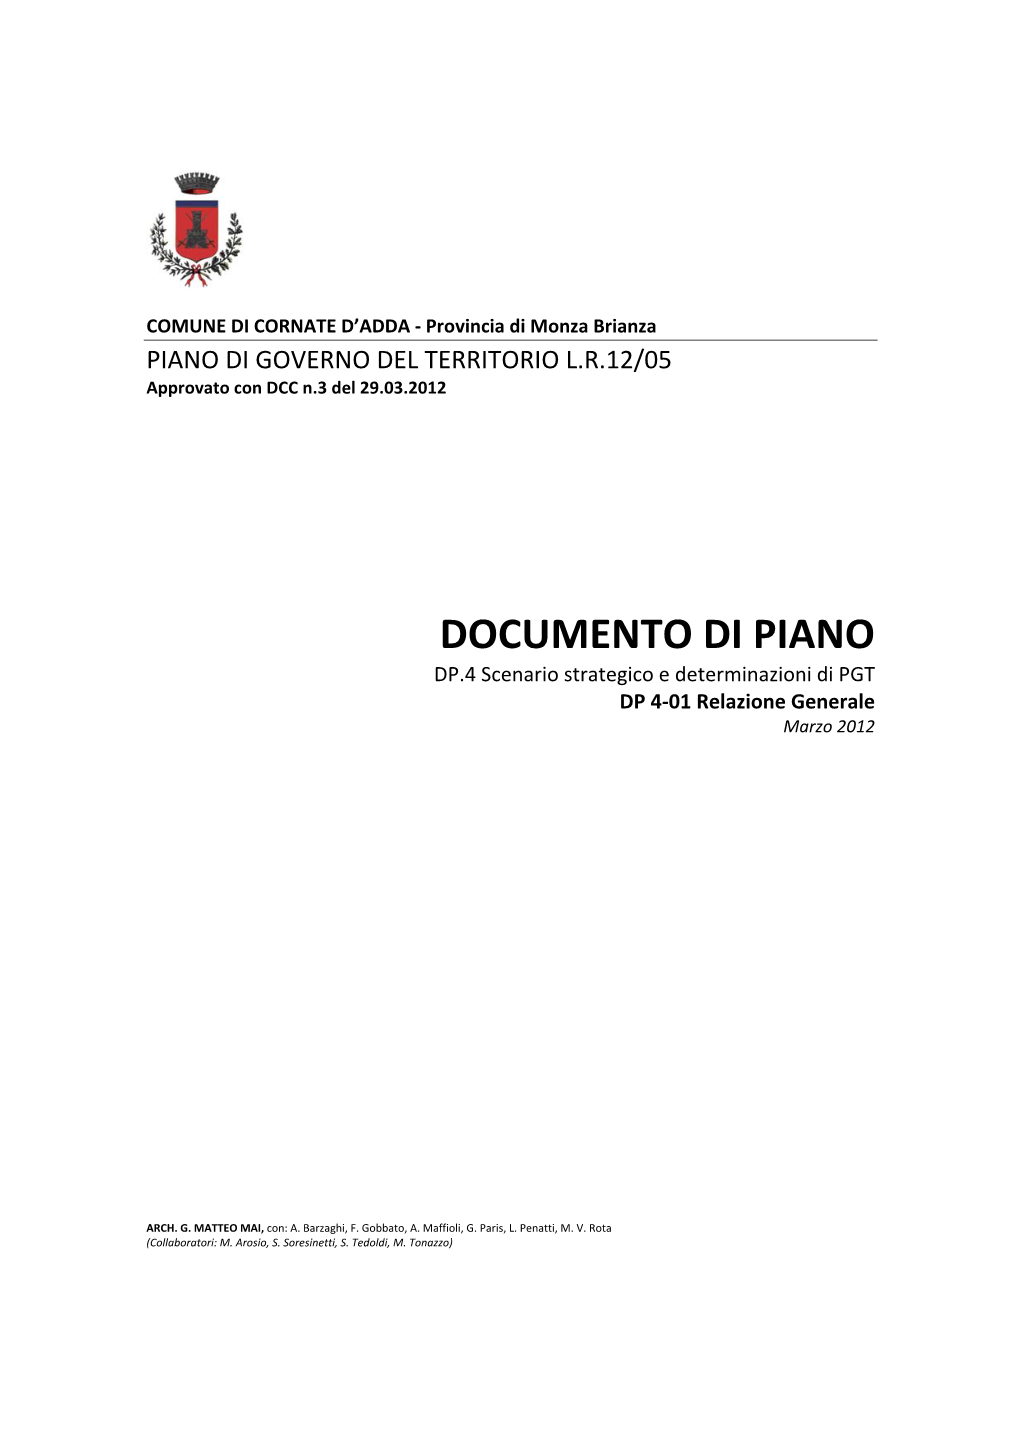 DOCUMENTO DI PIANO DP.4 Scenario Strategico E Determinazioni Di PGT DP 4‐01 Relazione Generale Marzo 2012